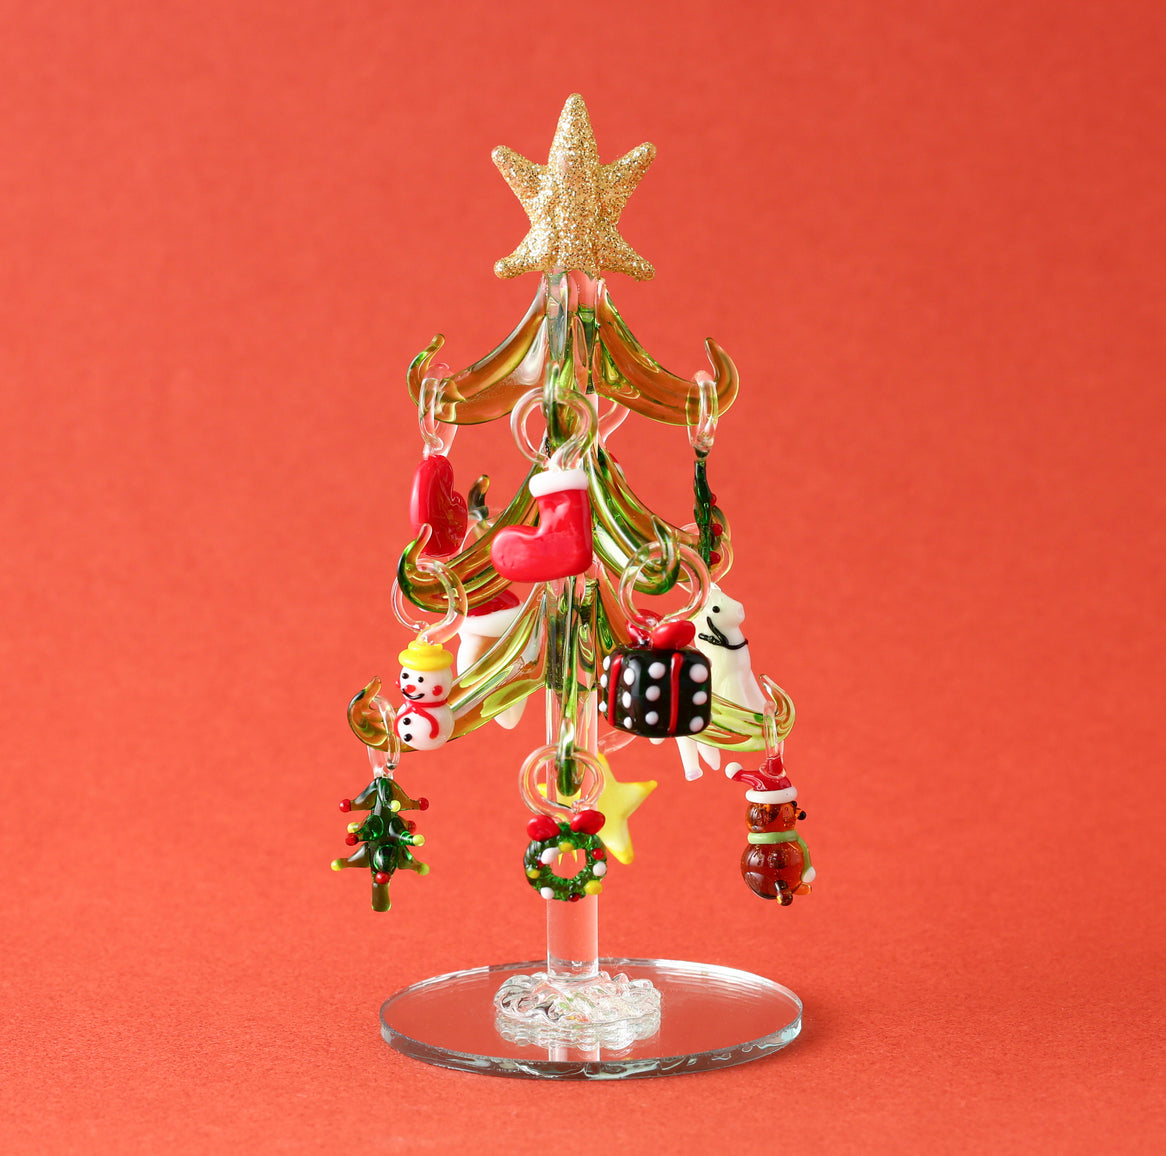 訳あり商品 ✨残り一点✨インテリア クリスマスツリー トップ 星型 温かい色